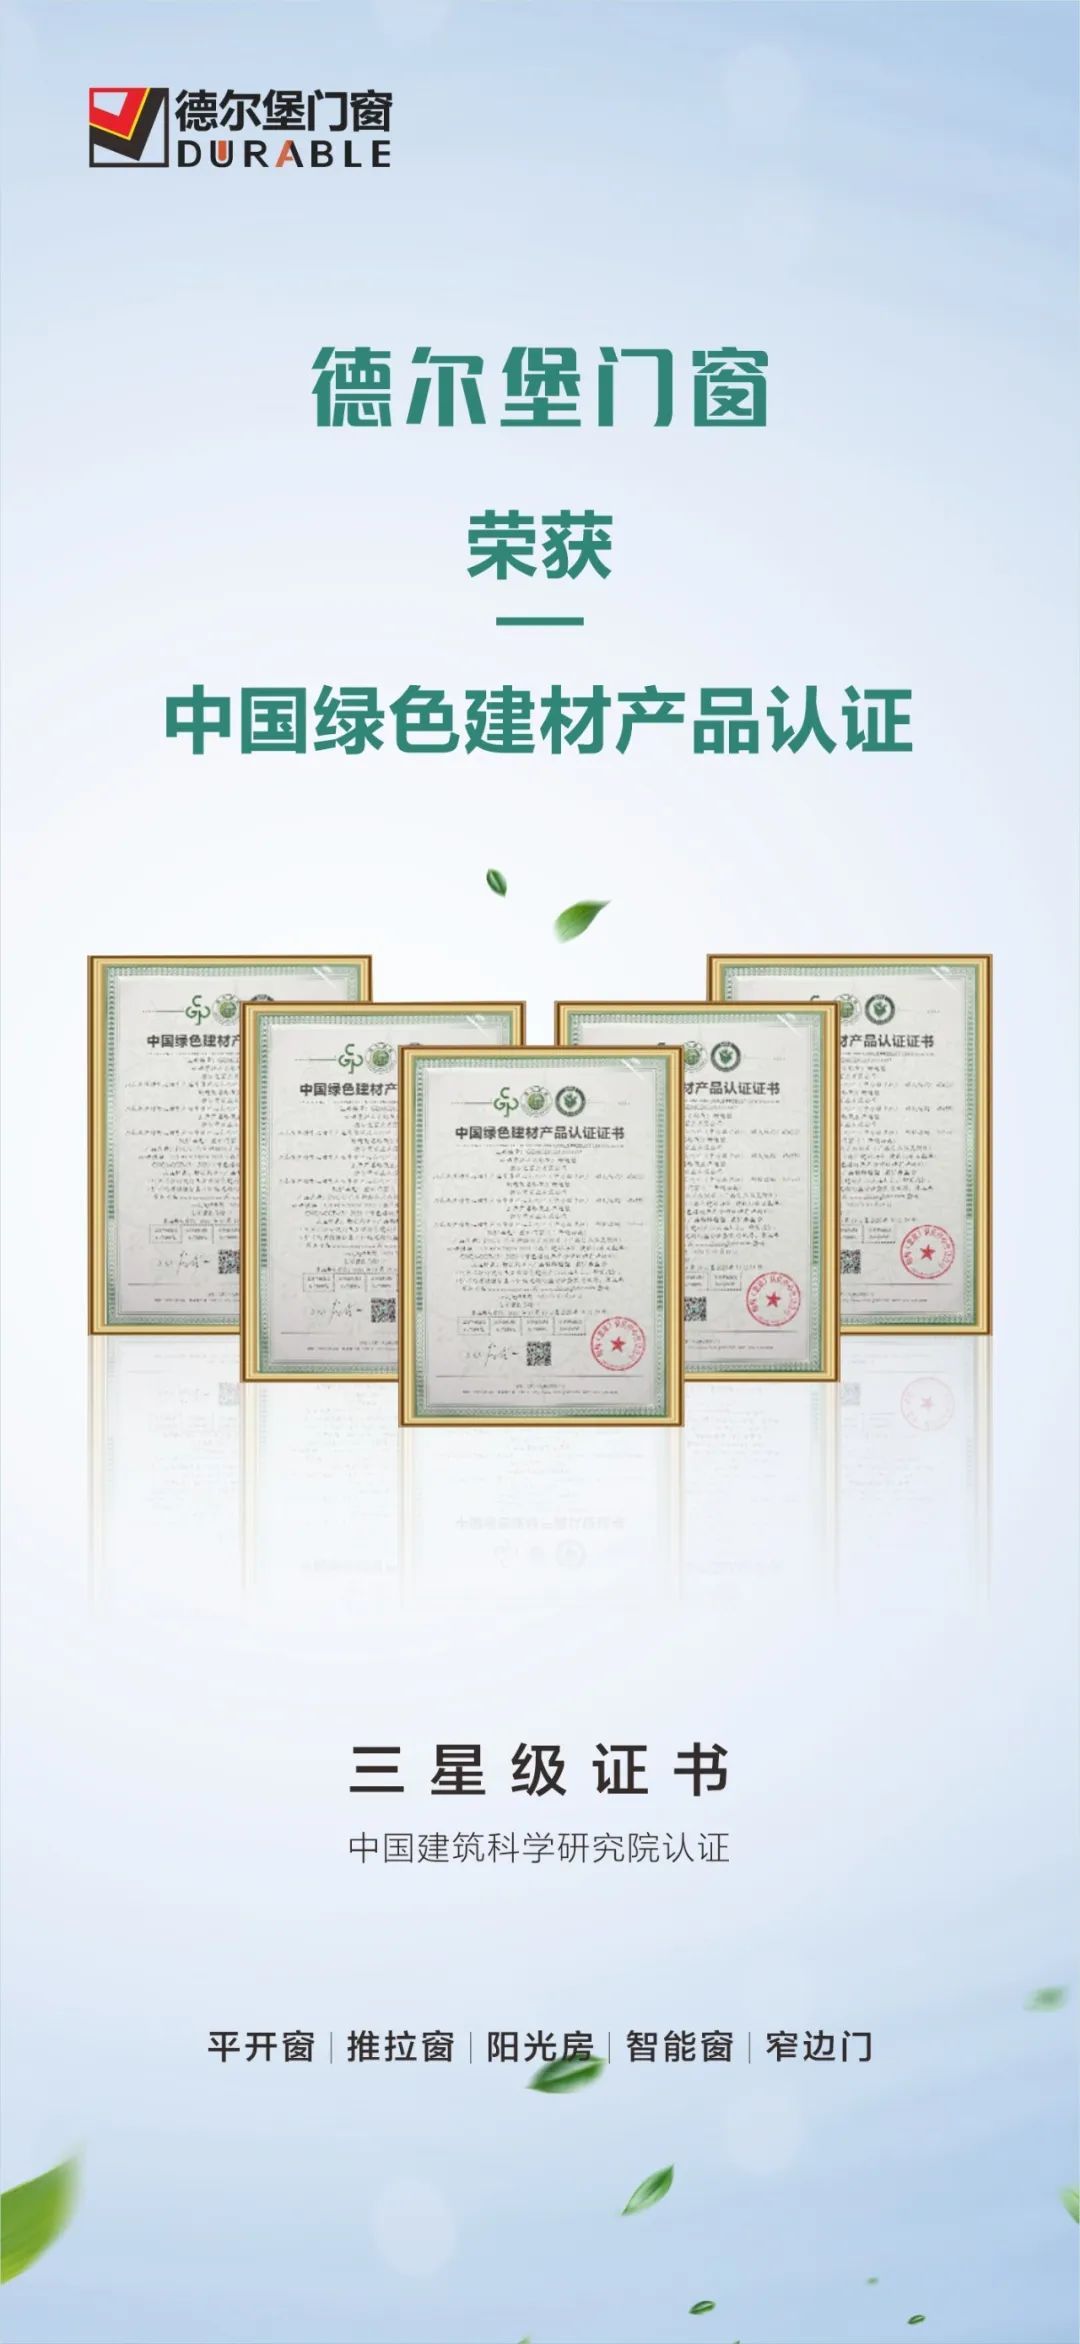 德尔堡门窗荣获「中国绿色建材产品认证证书」三星级认证！